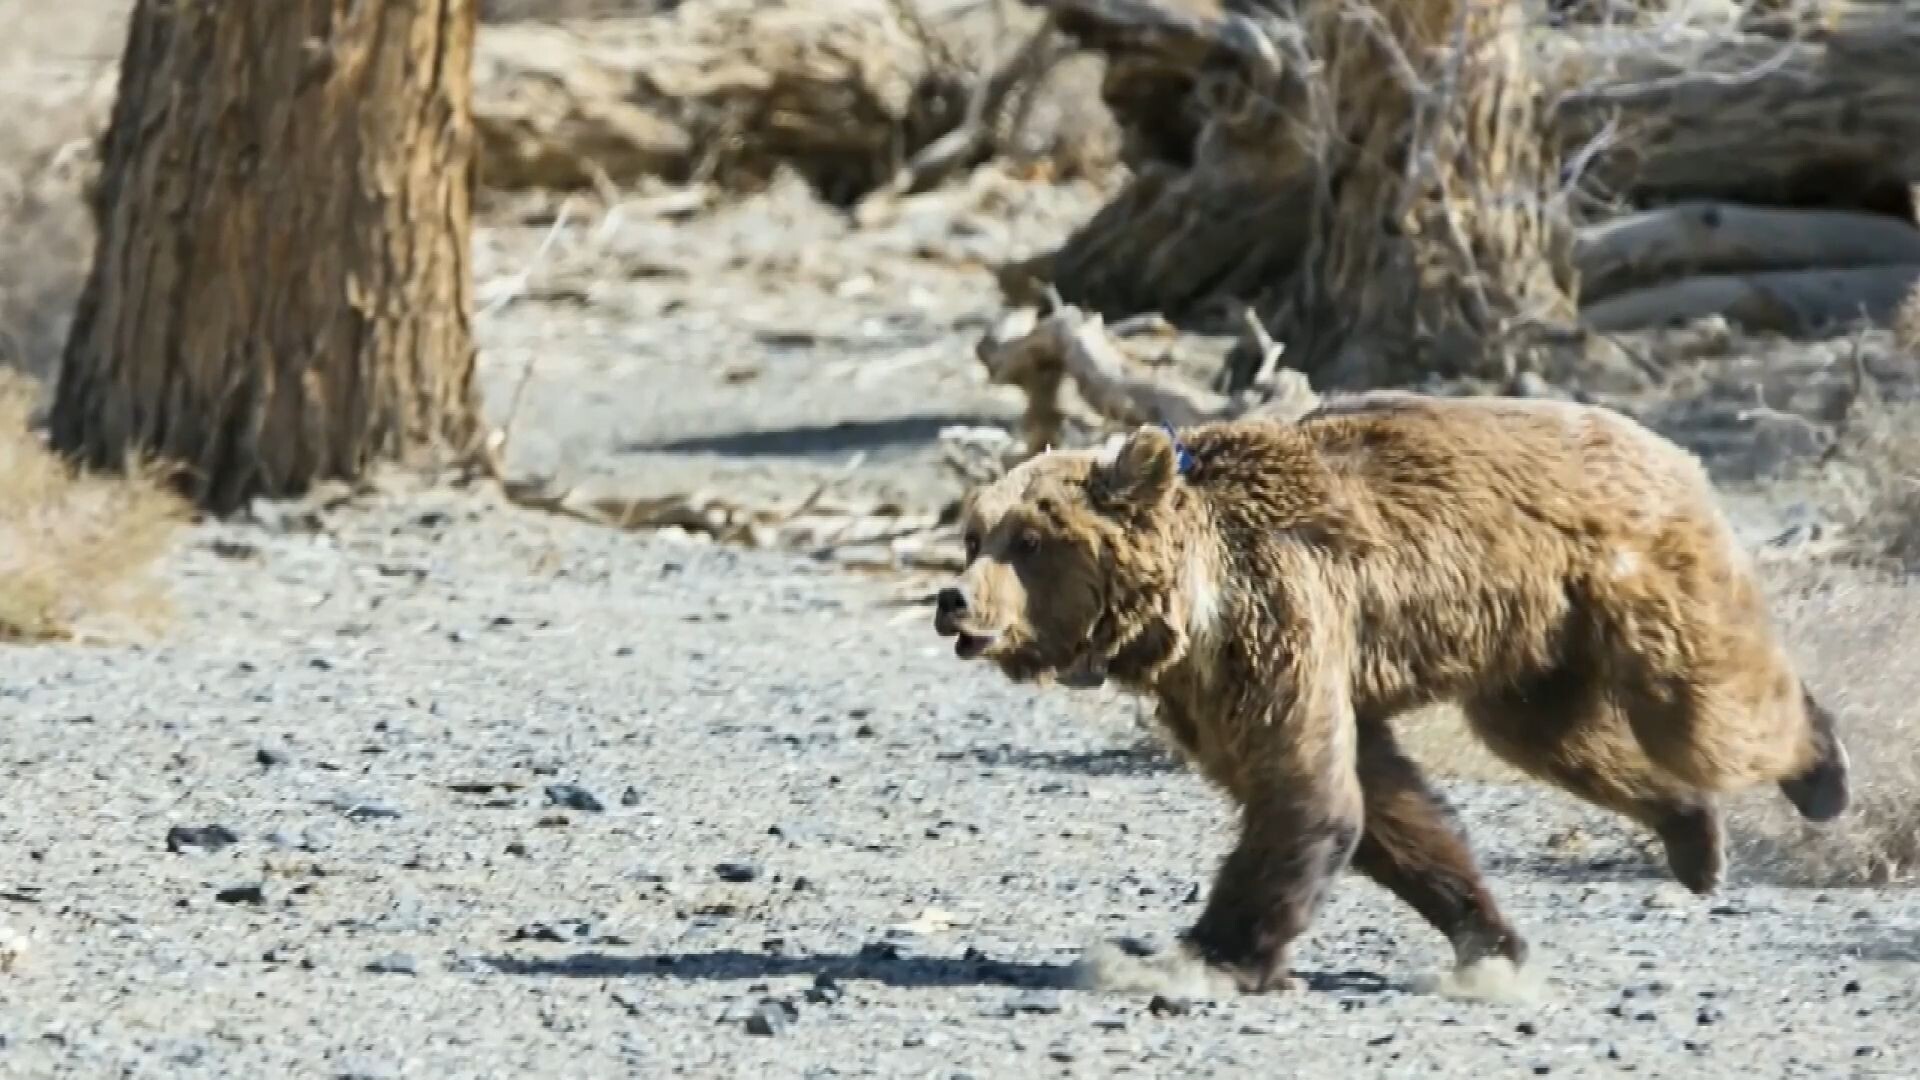 ยอด 'หมีโกบี' ในมองโกเลีย ทะลุ 50 ตัว หลังจีนหนุนคุ้มครอง